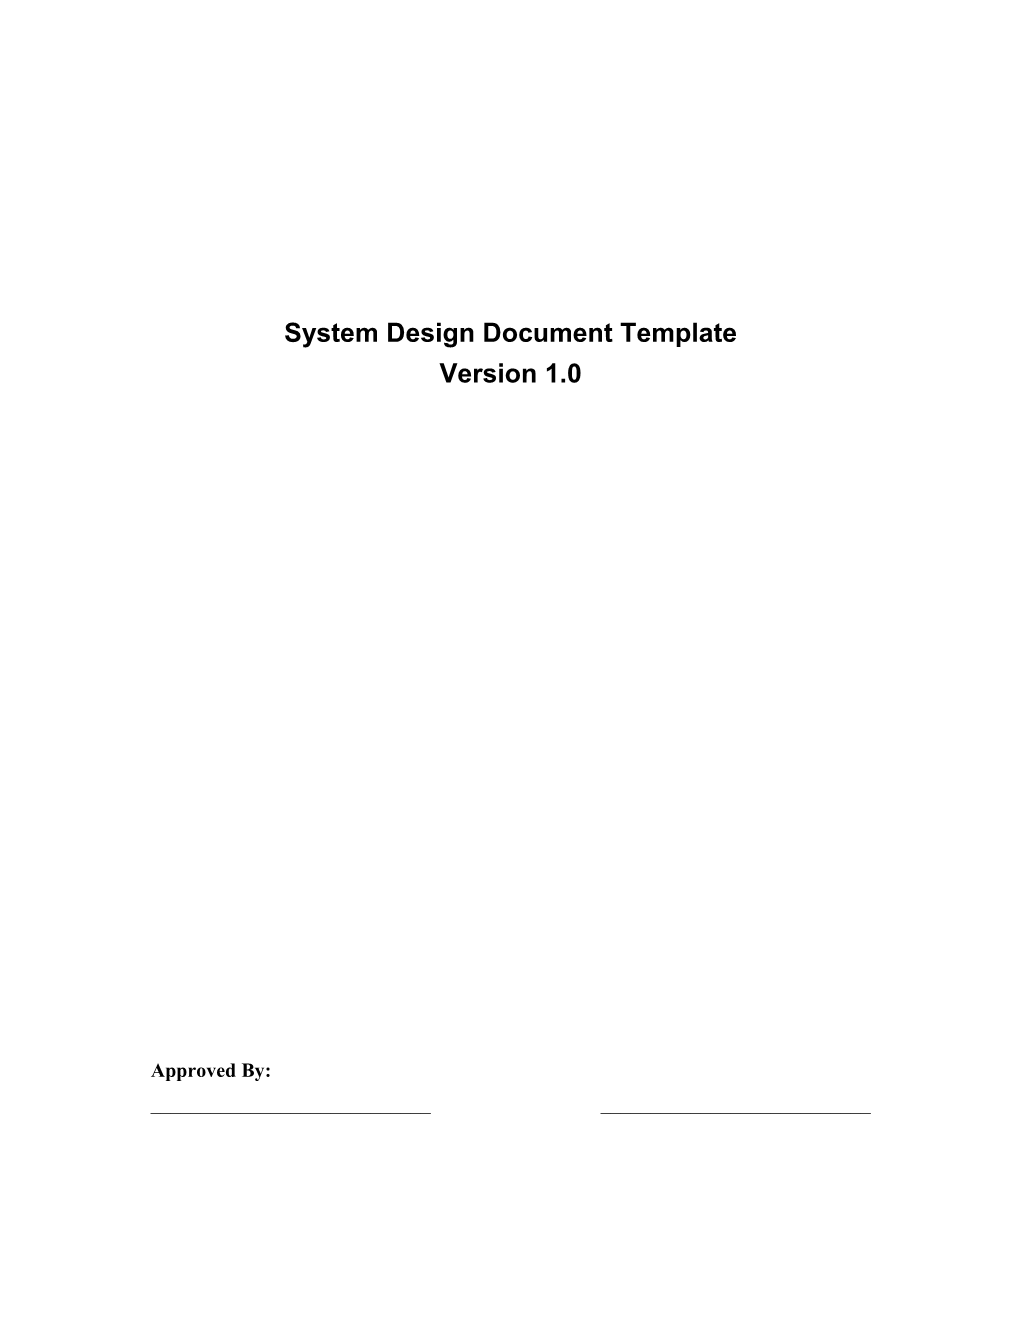 System Design Document Template V1.0July 25, 2010